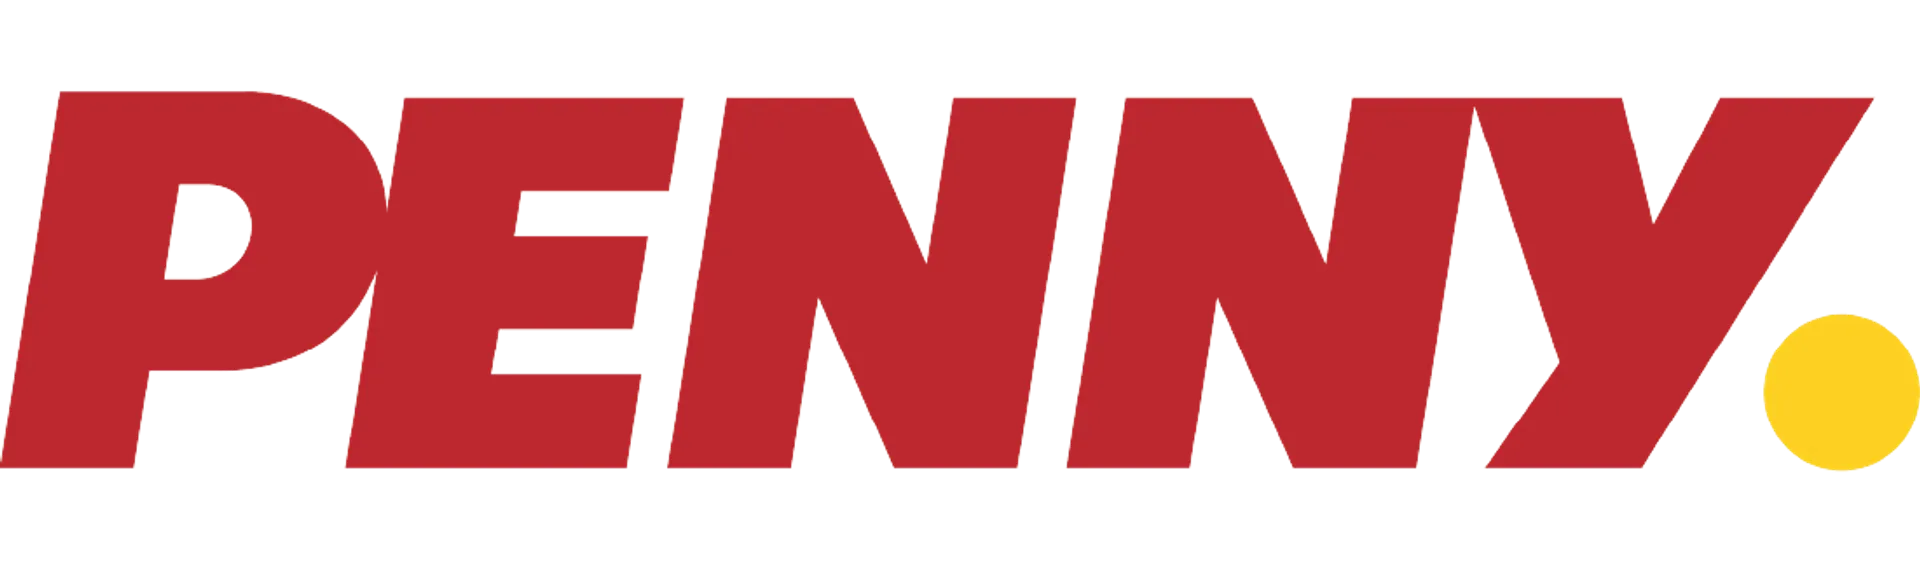 PENNY logo